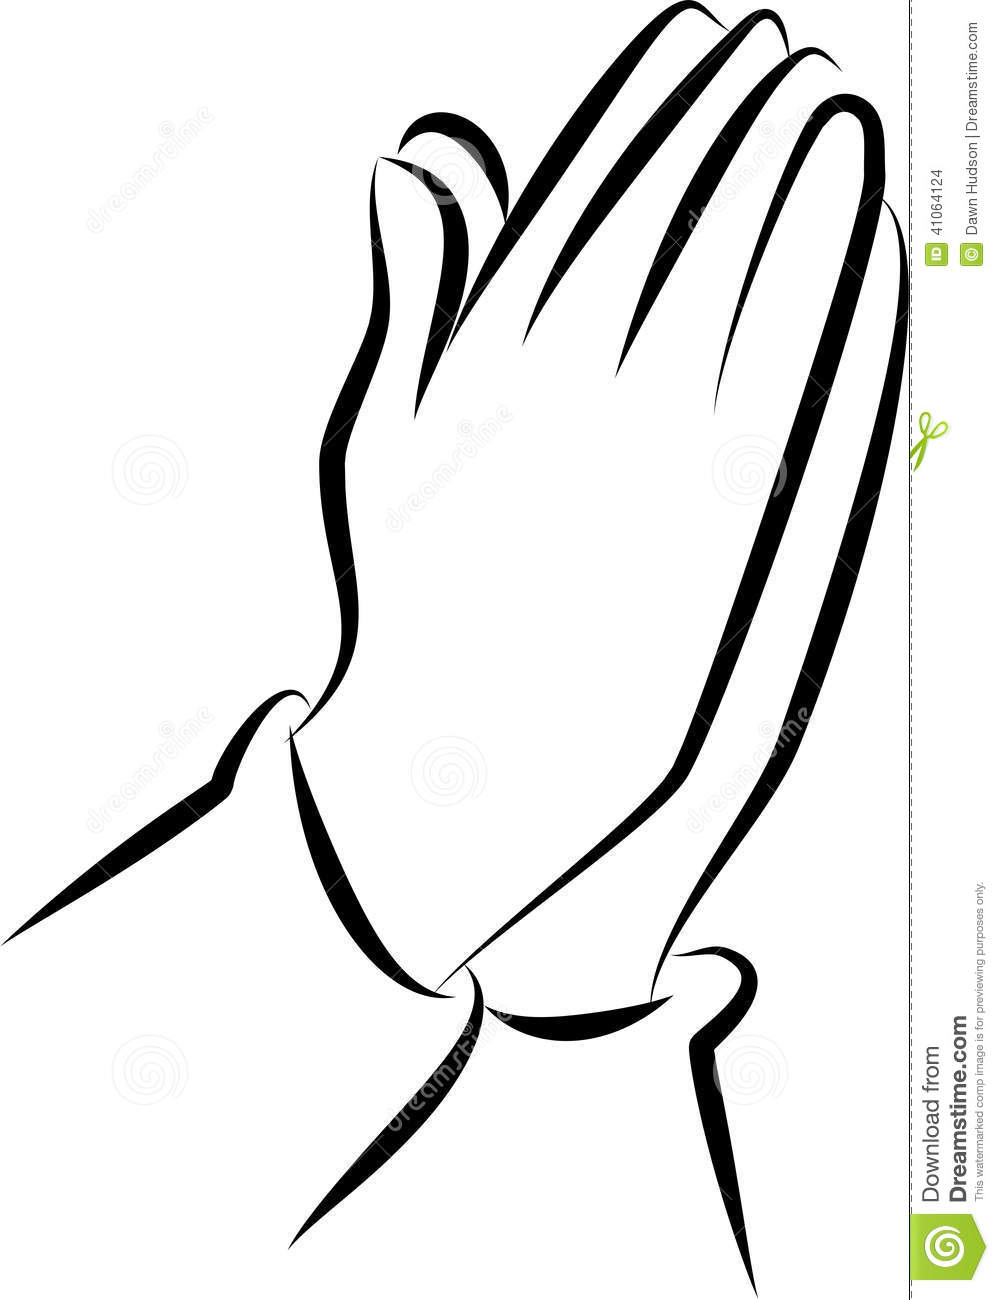 Prayer praying hands clipart 